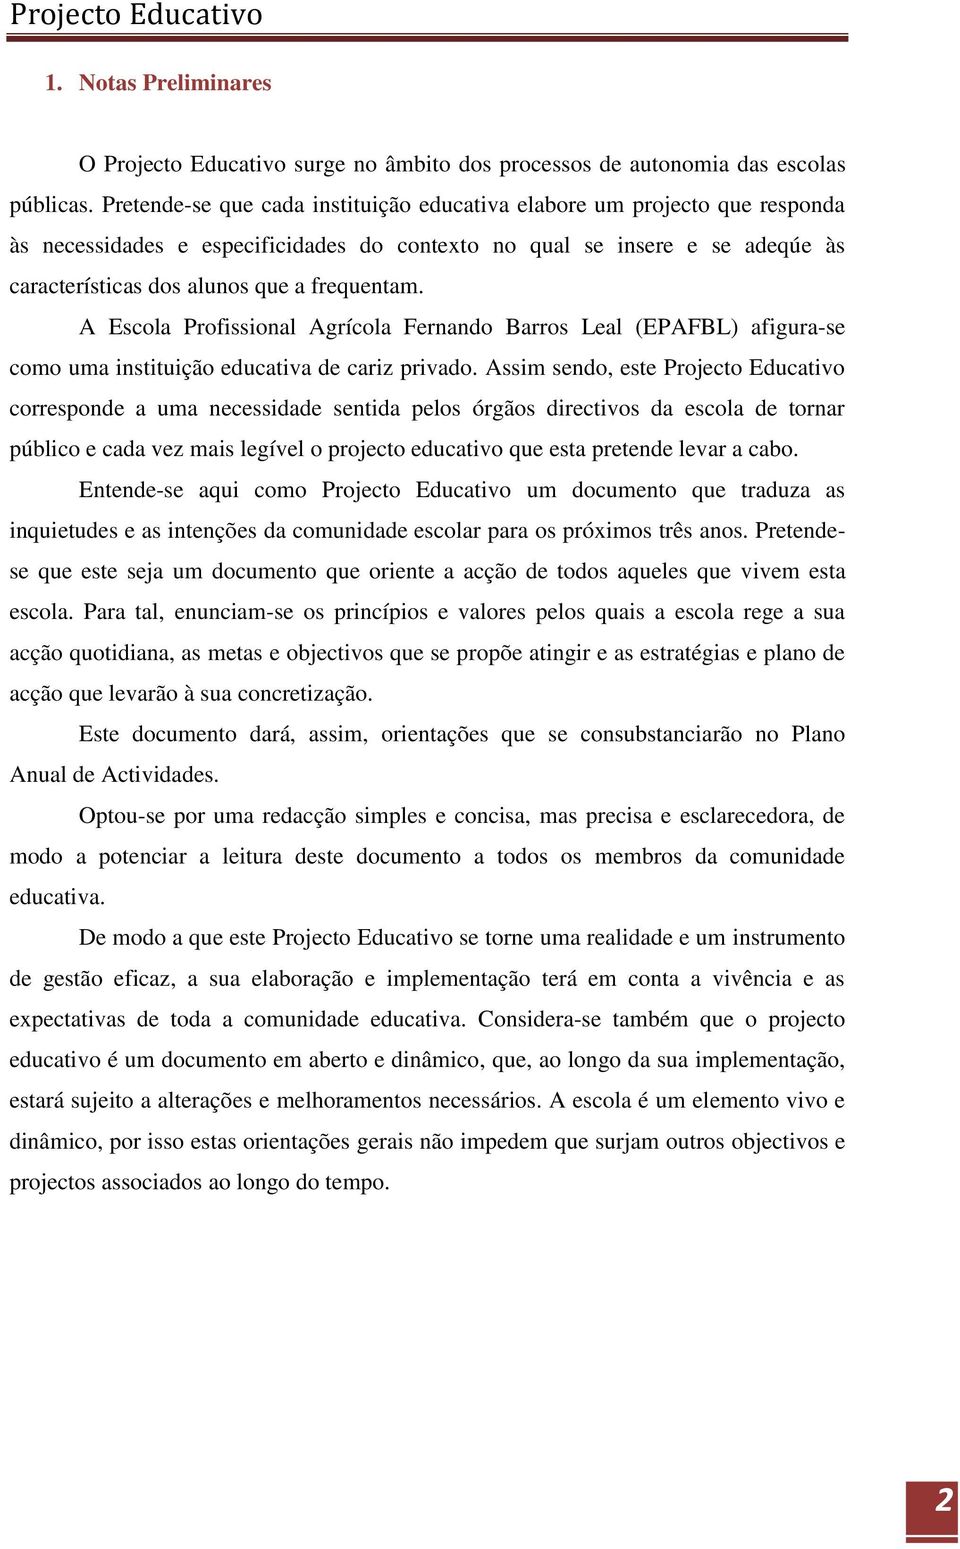 A Escola Profissional Agrícola Fernando Barros Leal (EPAFBL) afigura-se como uma instituição educativa de cariz privado.